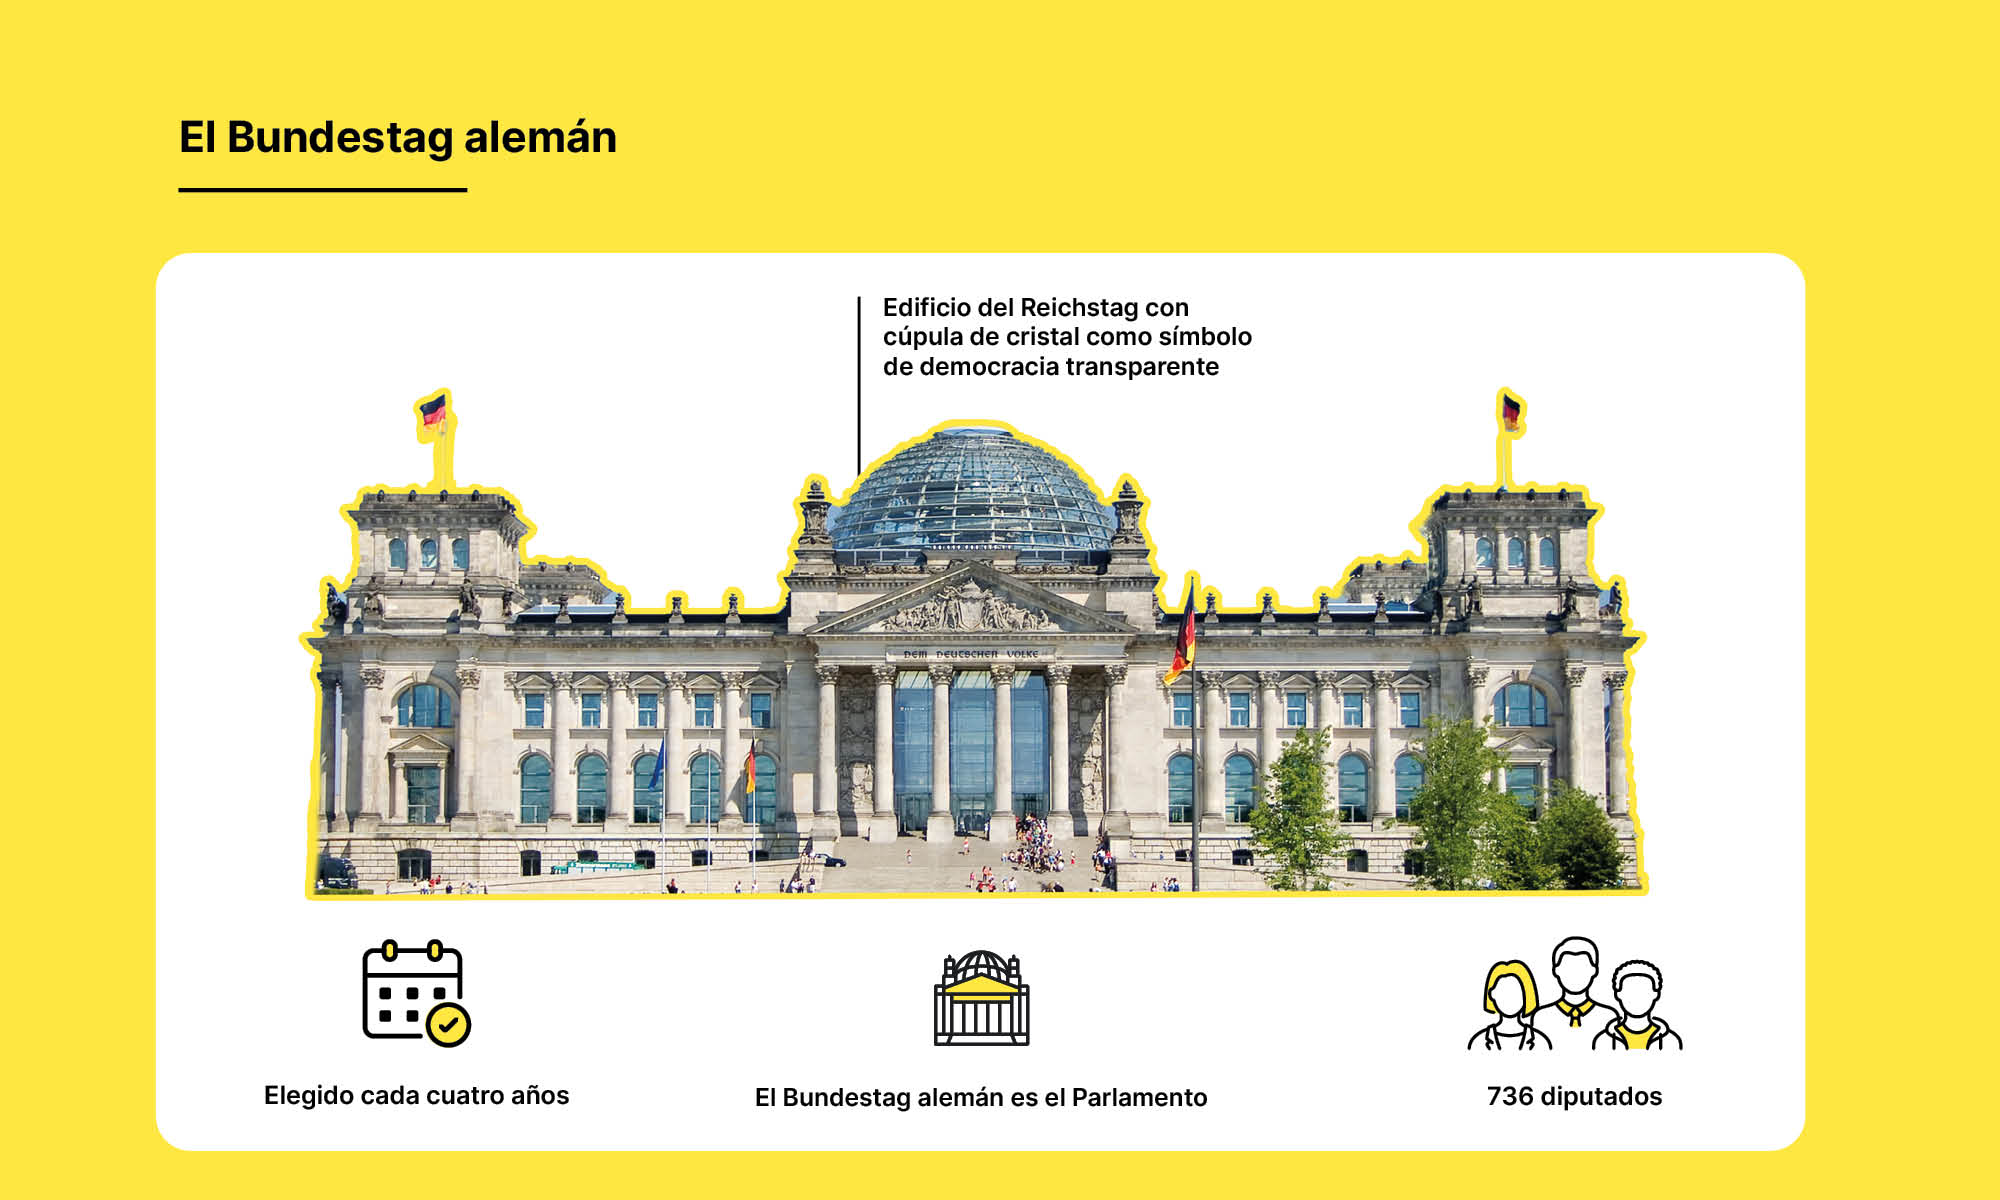 El Bundestag alemán